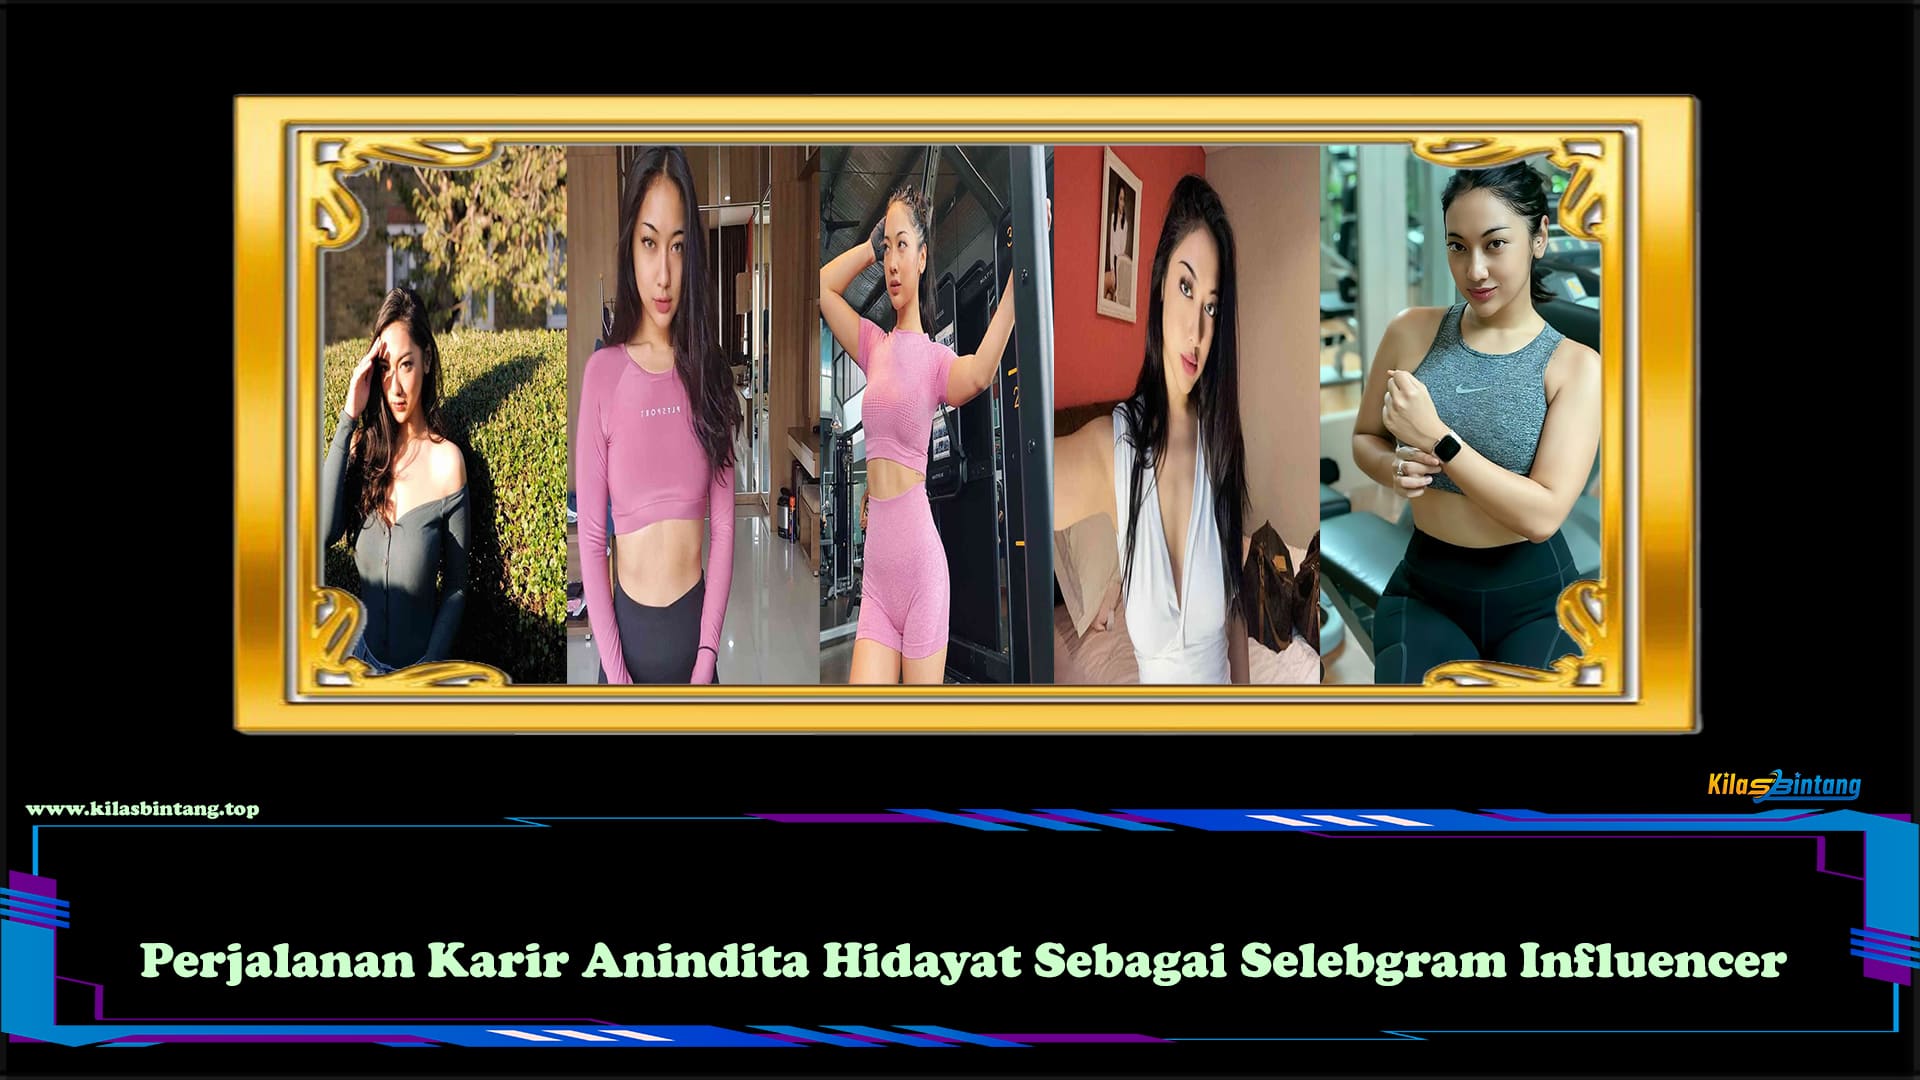 Perjalanan Karir Anindita Hidayat Sebagai Selebgram Influencer